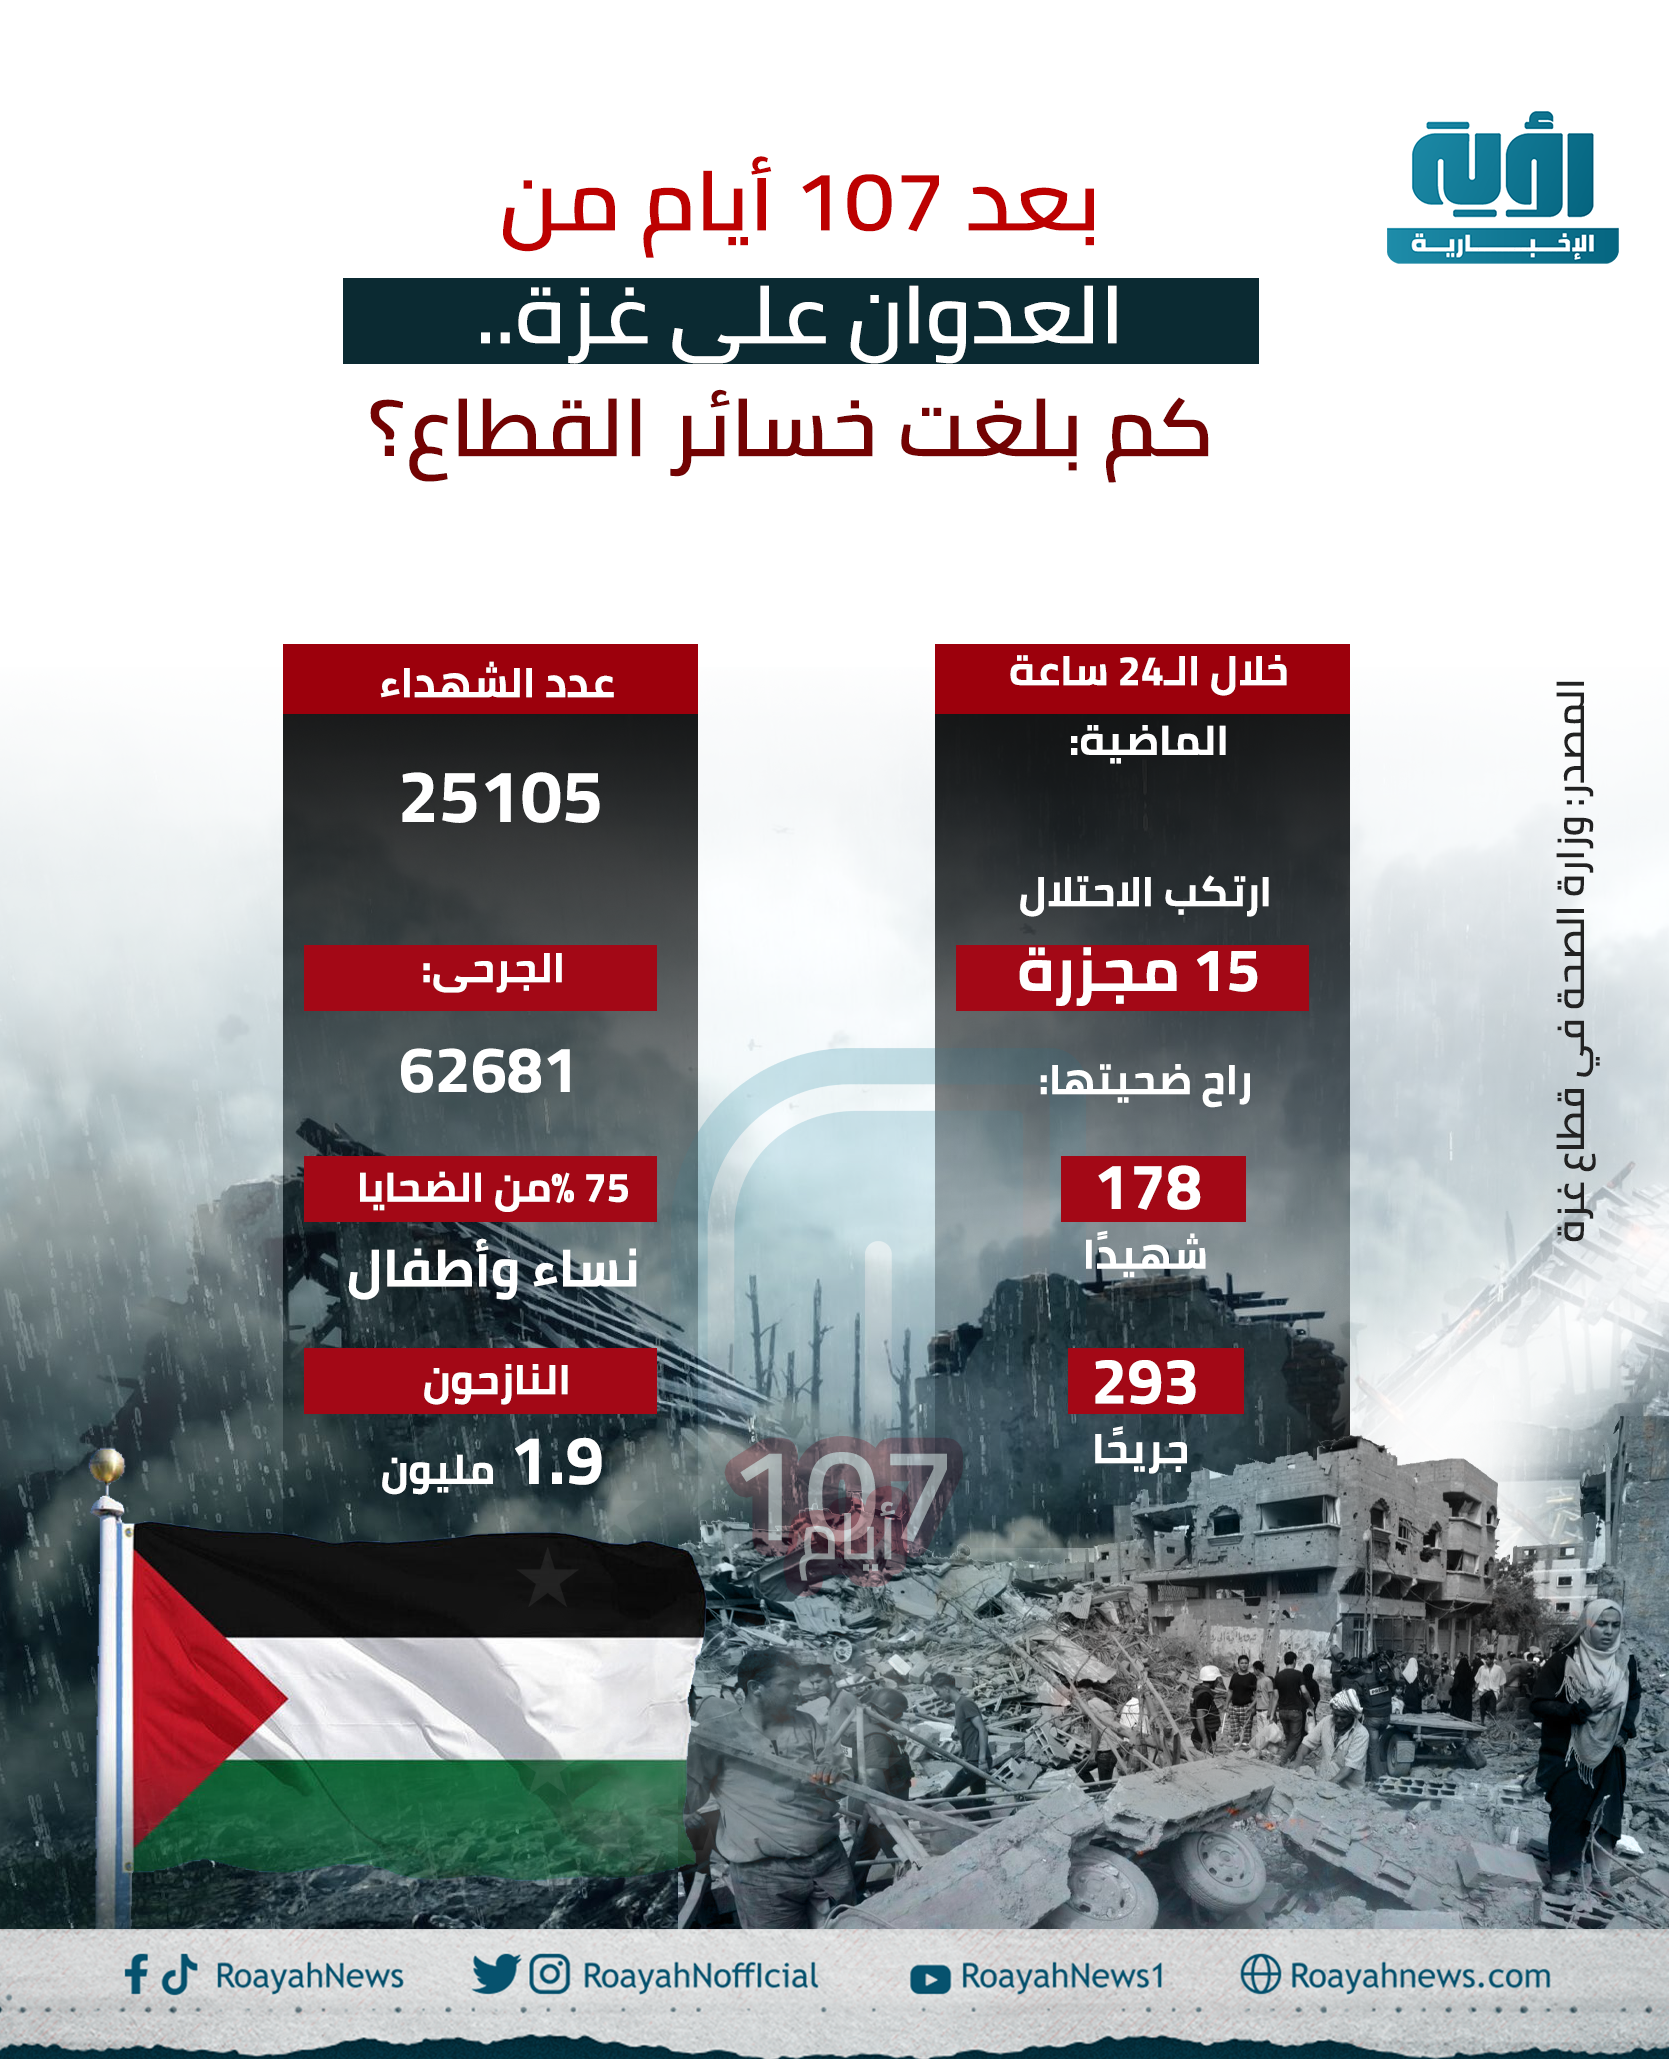 بعد 107 أيام من العدوان على غزة. كم بلغت خسائر القطاع؟